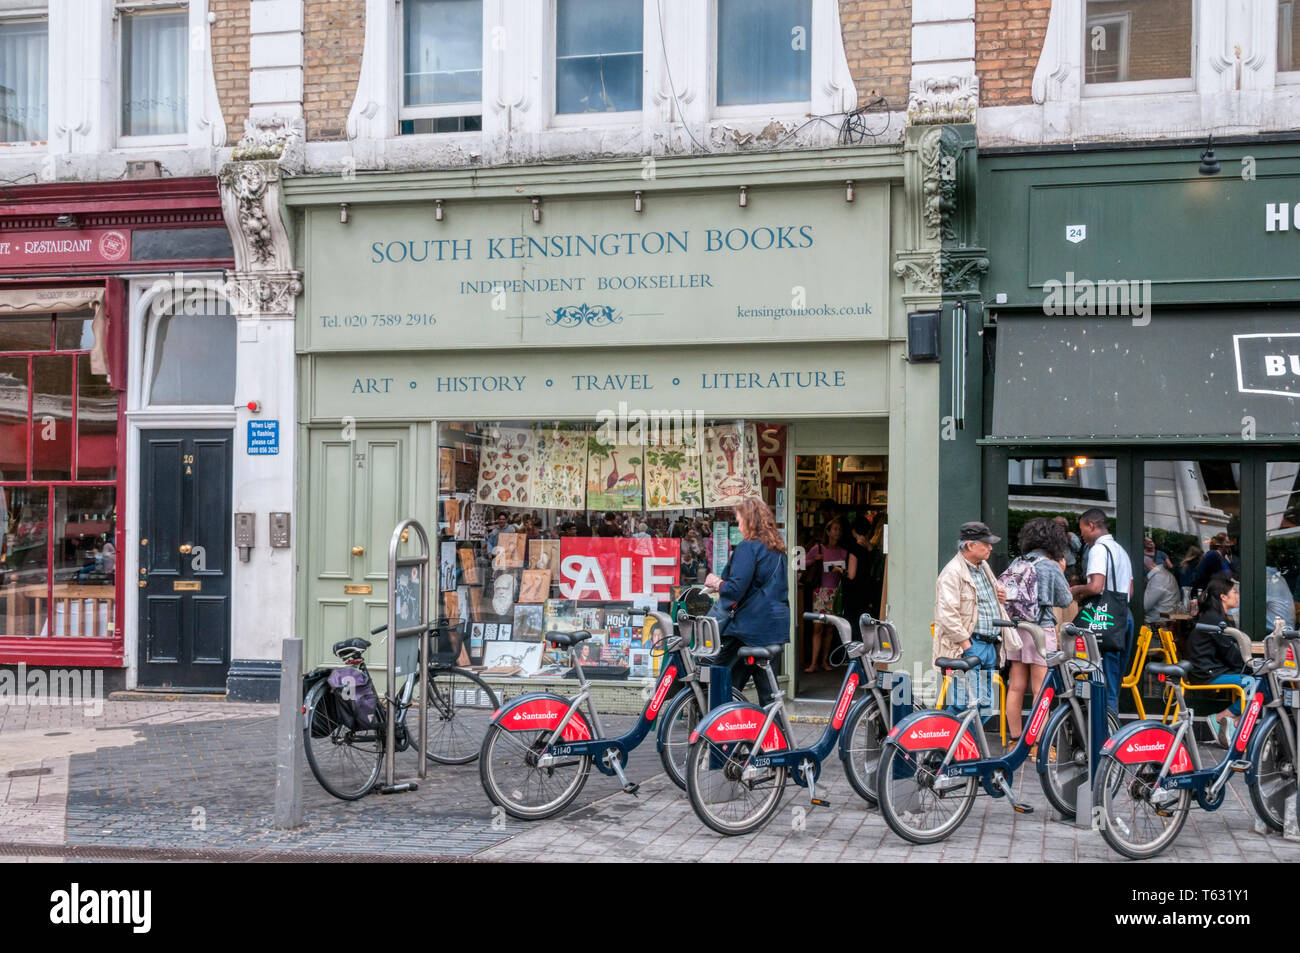 South Kensington Bücher, eine unabhängige Buchhändler. Stockfoto